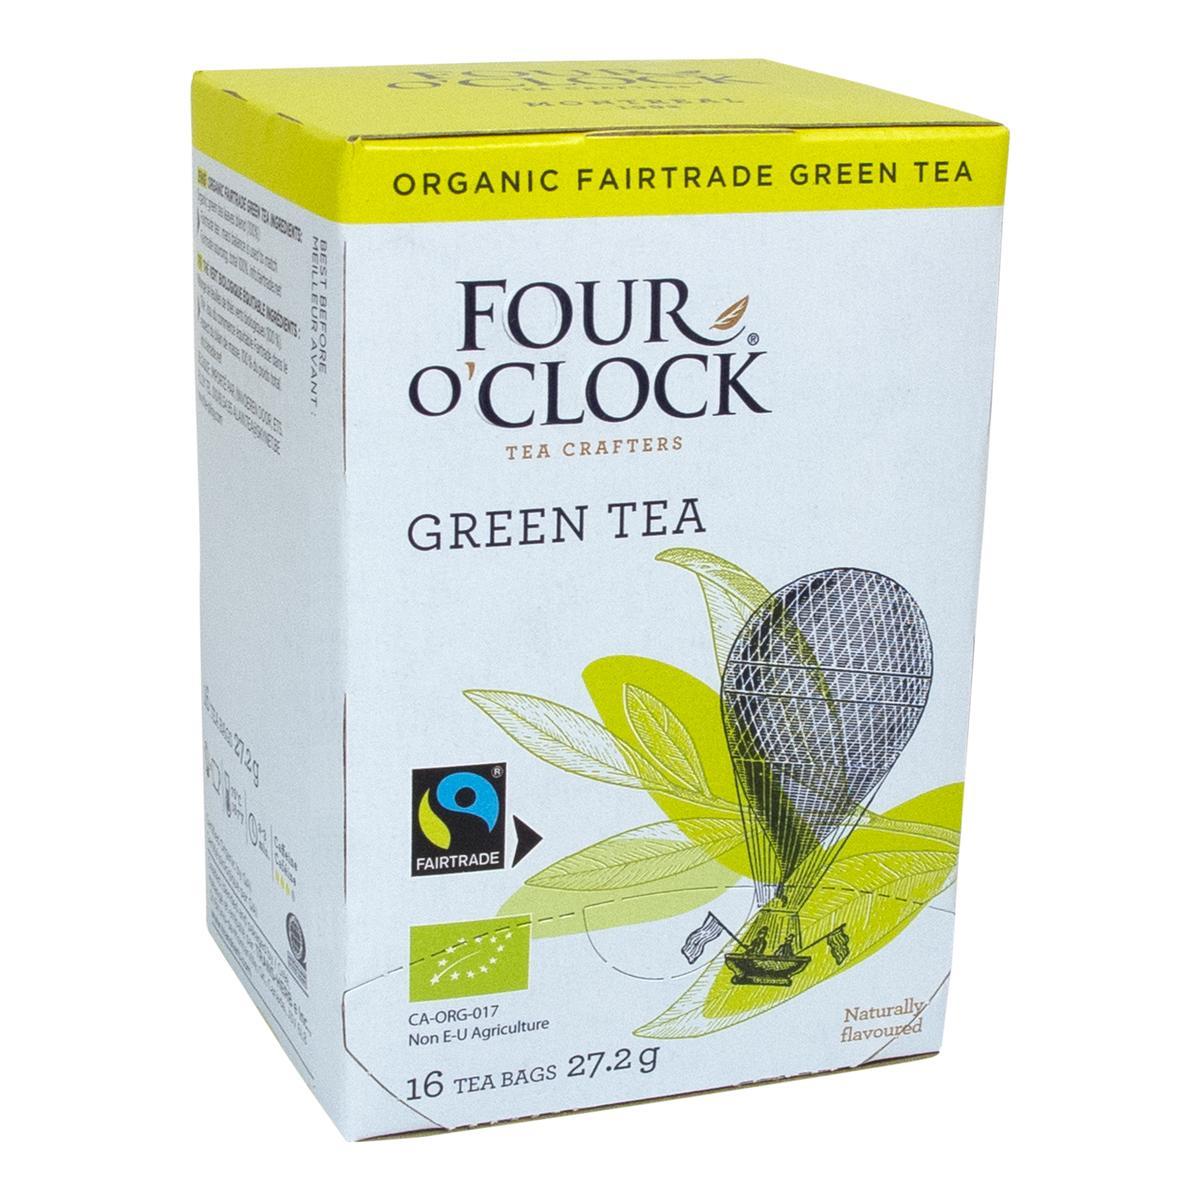 Four O’Clock's Four O'Clock GREEN TEA'